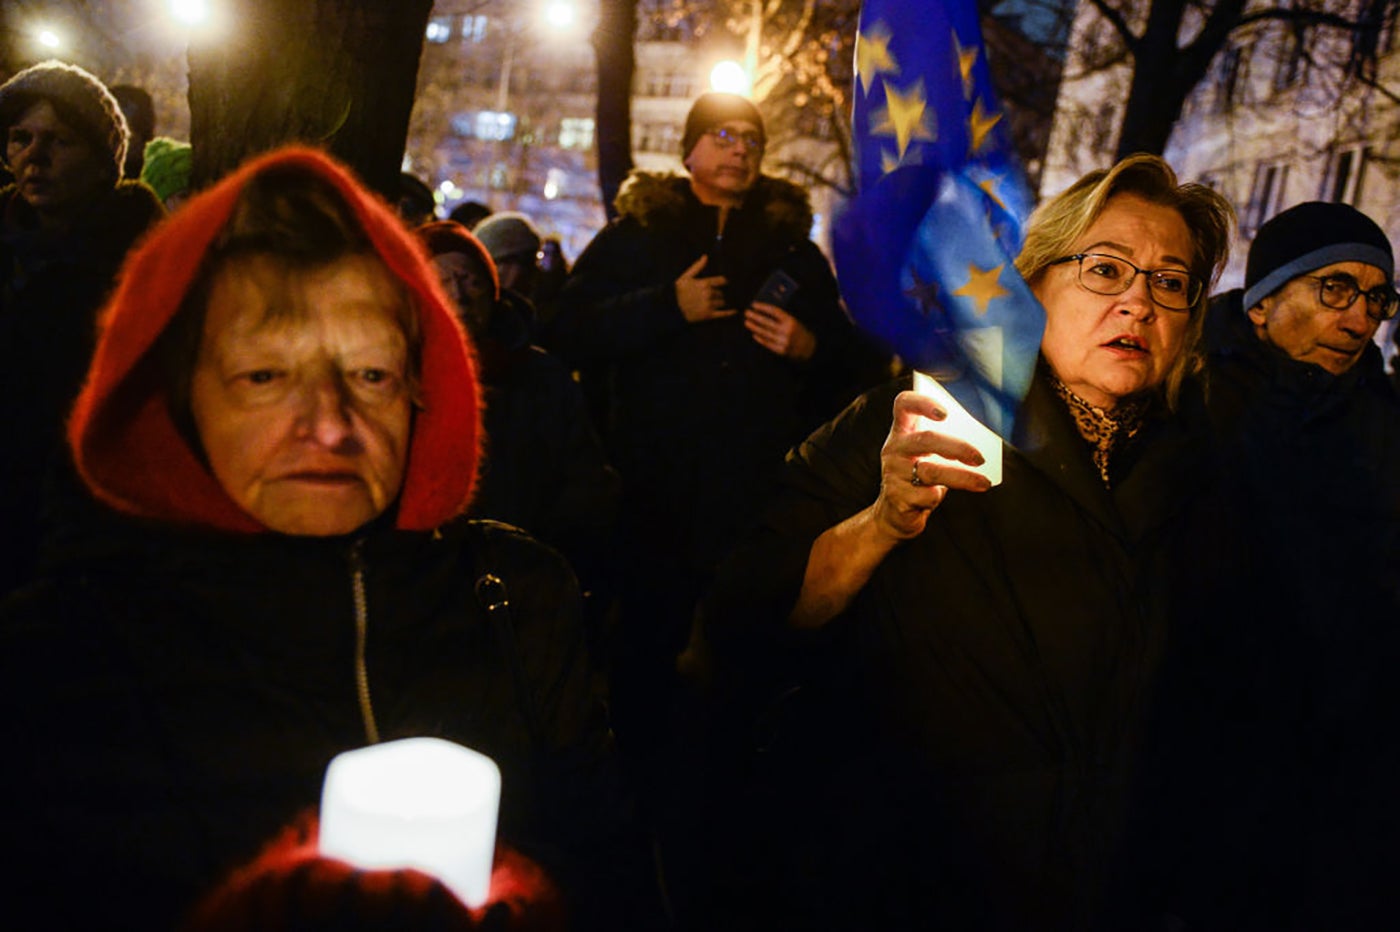 Frauen mit Kerzen und EU-Flagge bei einer Soldaritätskundgebung für polnische Richter vor dem Justizministerium, 1. Dezember 2019, Warschau, Polen. 